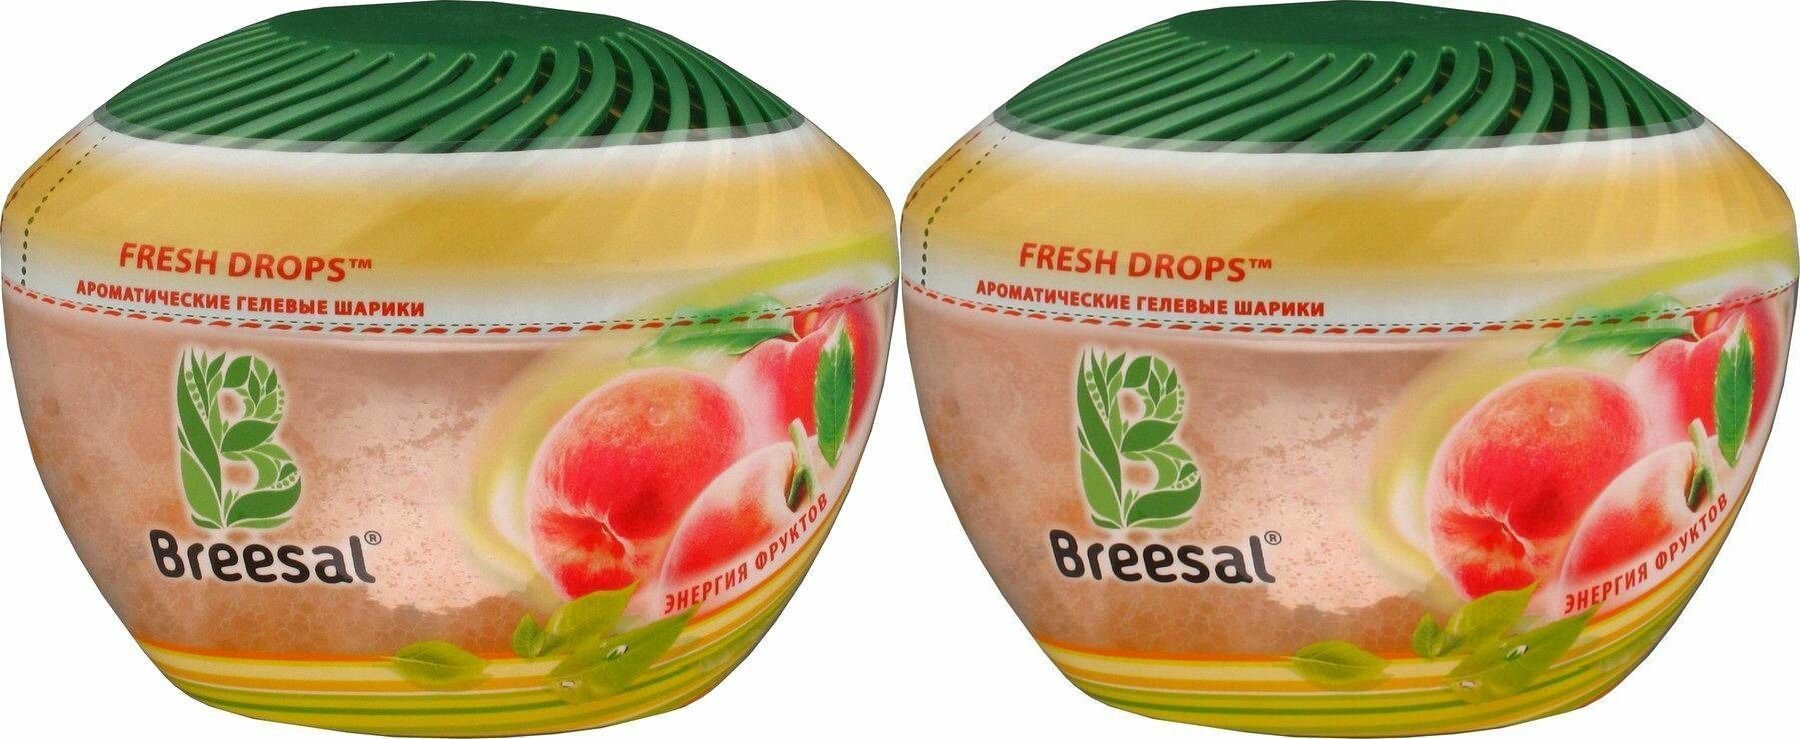 Breesal Ароматические гелевые шарики Aroma Drops Энергия фруктов 215гр, 2шт.